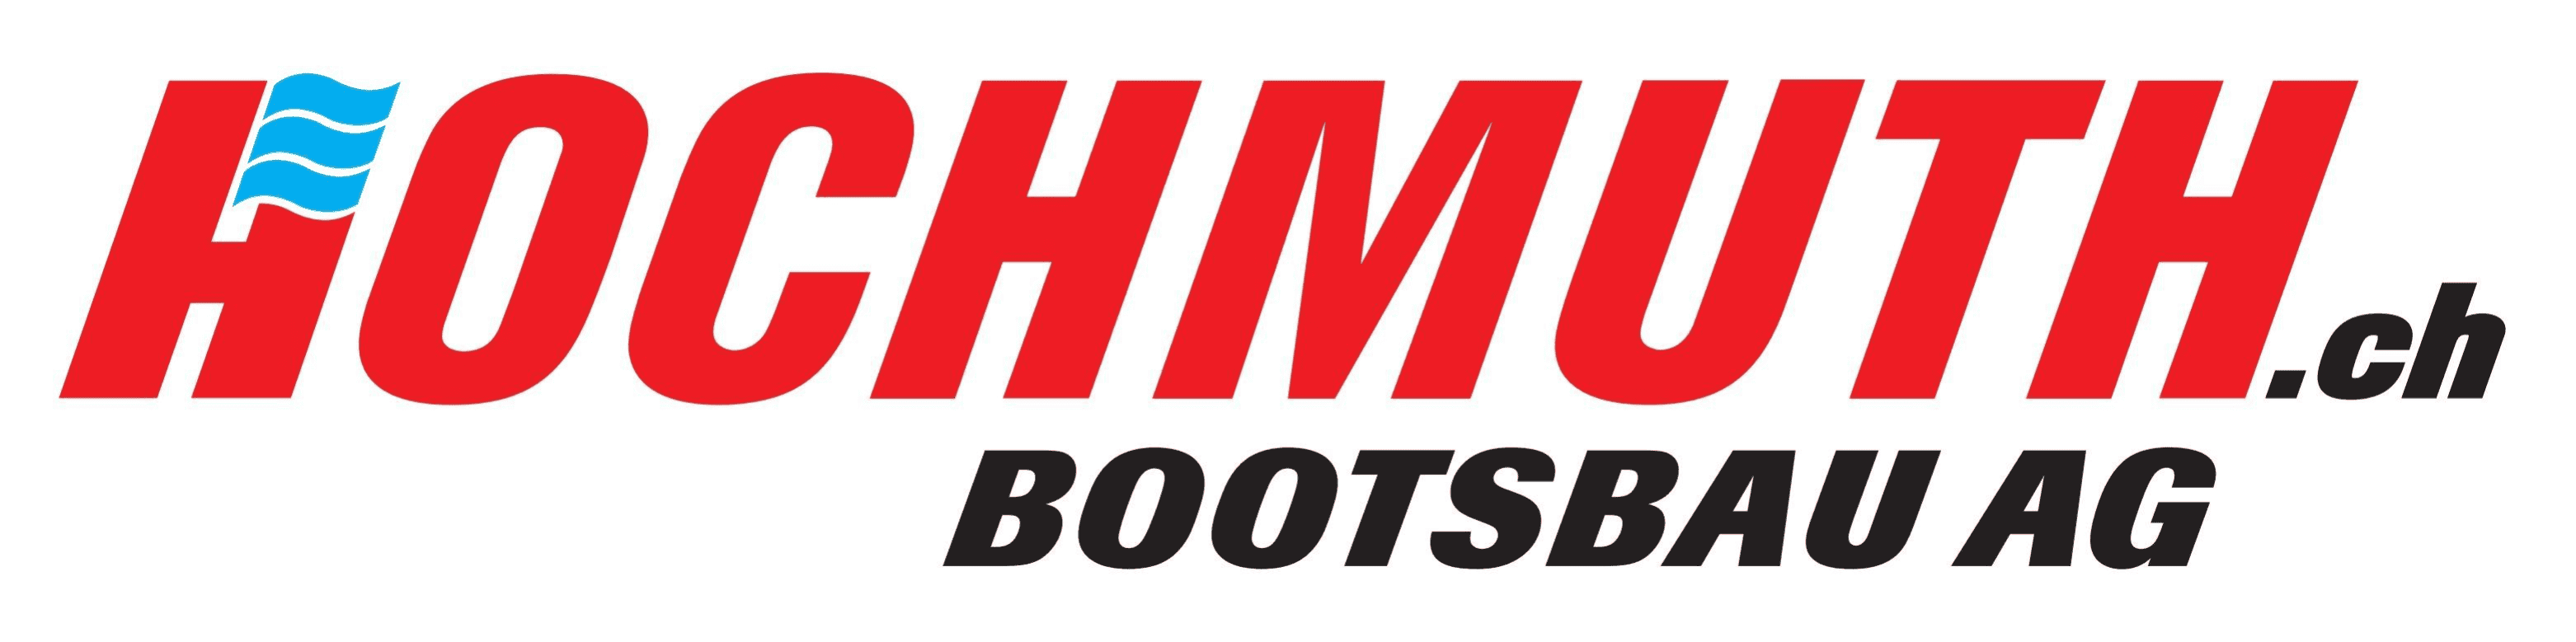 Hochmuth Bootsbau AG